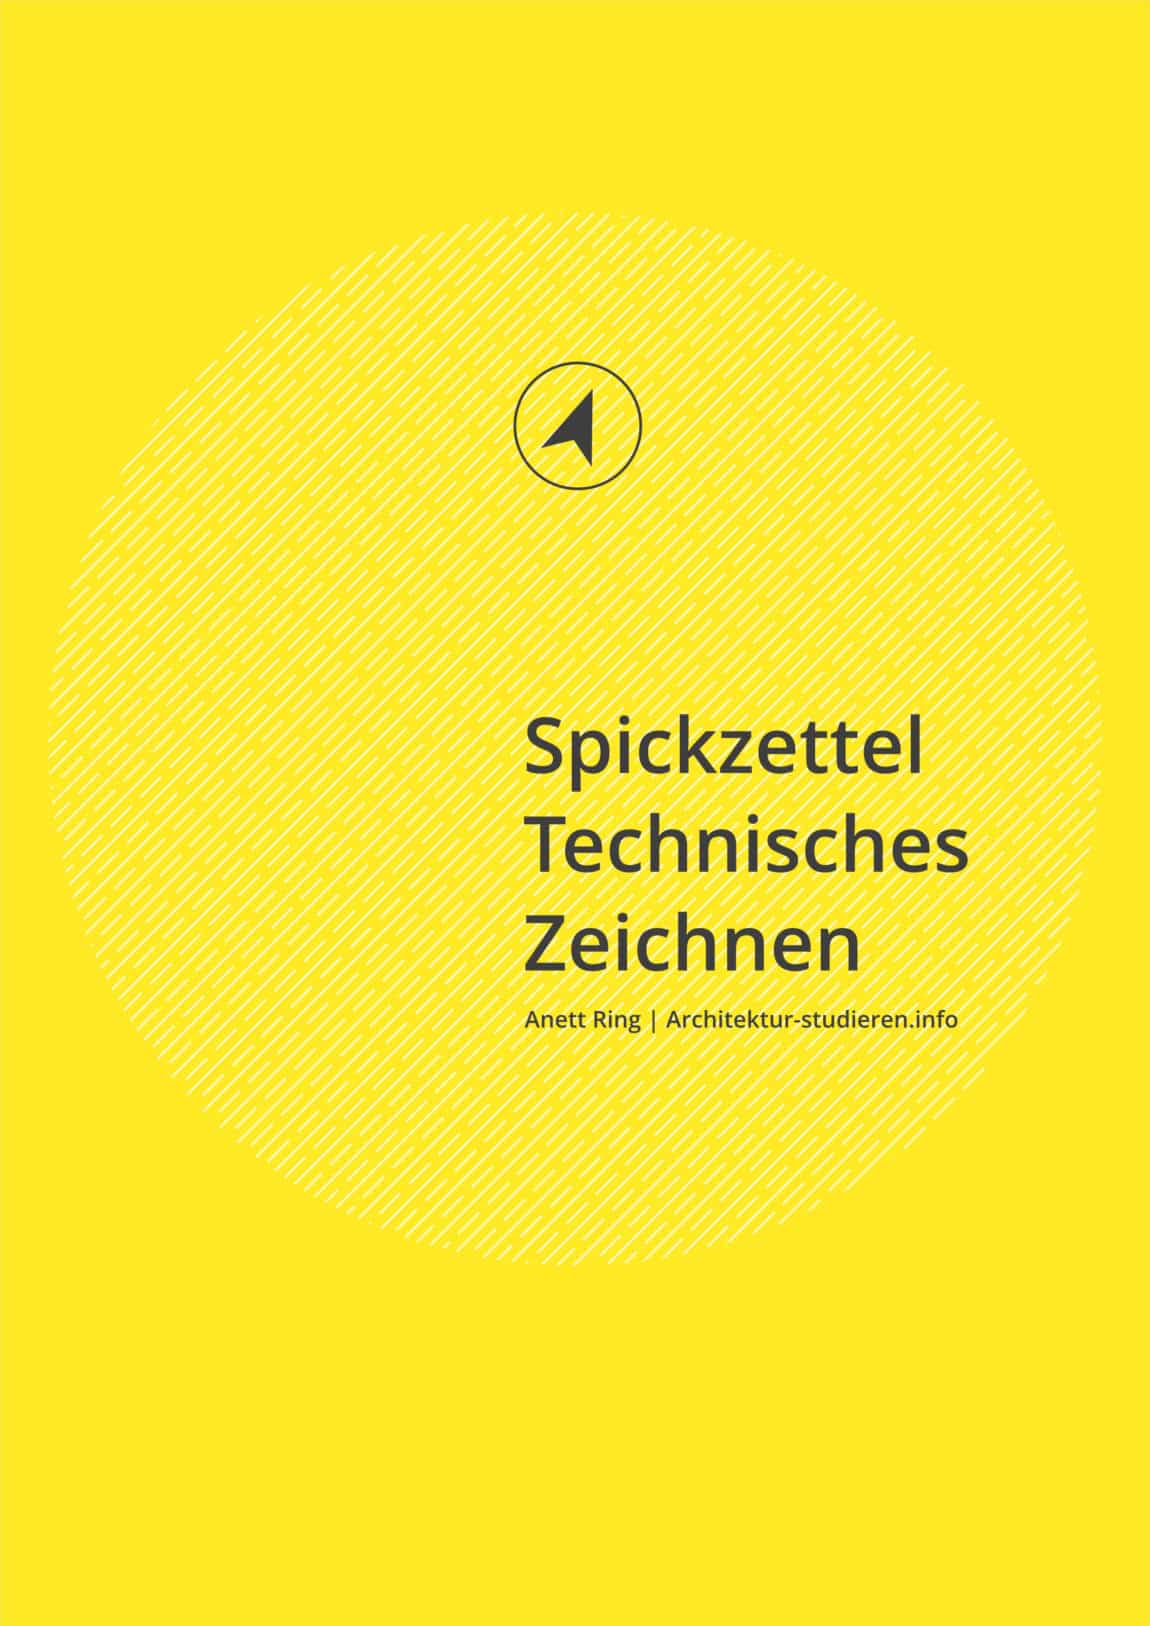 E-Book: Spickzettel mit Grundlagen Technisches Zeichnen | © Anett Ring, Architektur-studieren.info